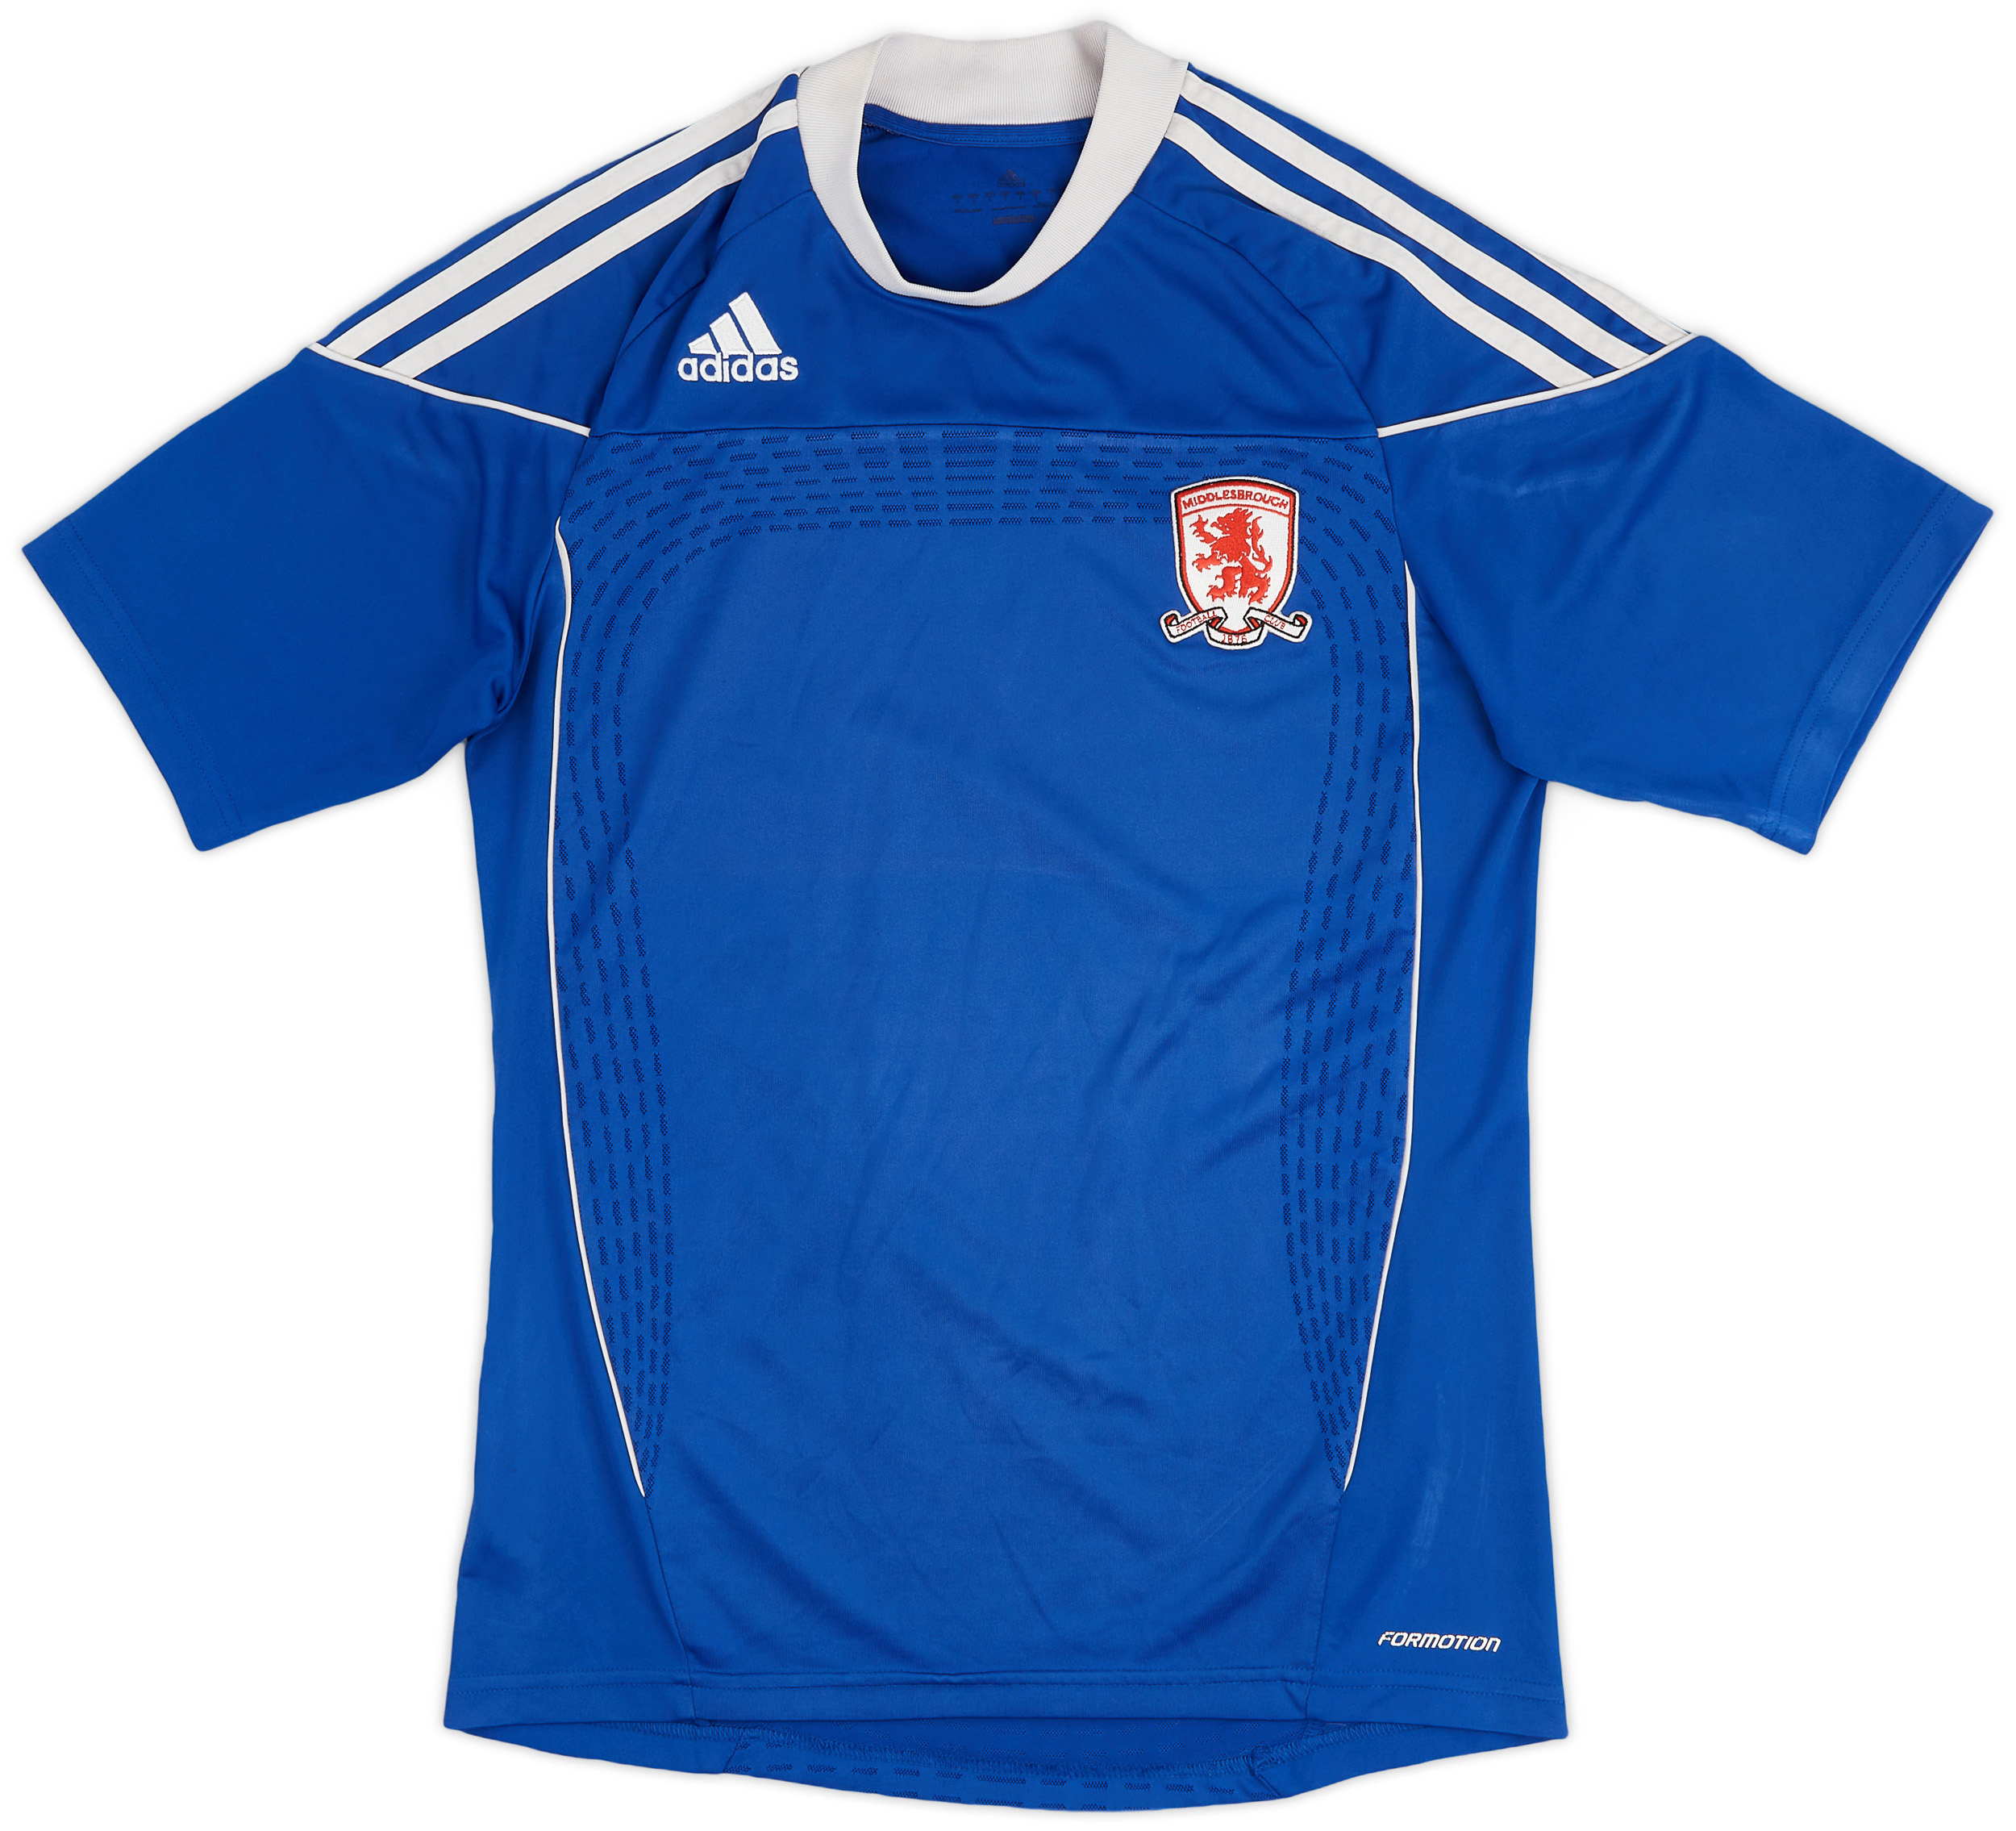 Middlesbrough  Uit  shirt  (Original)